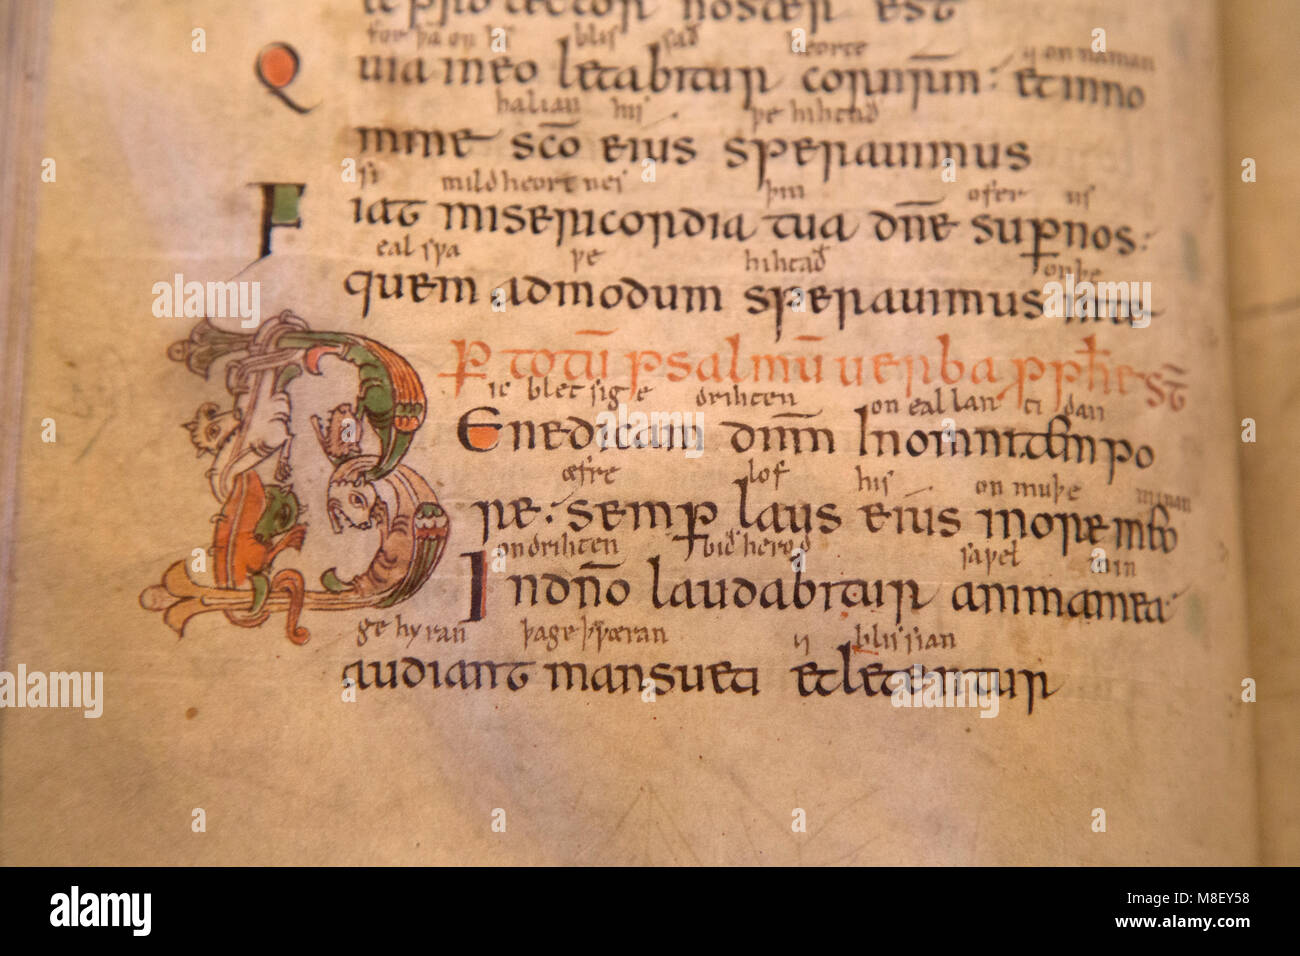 Mittelalterliche Handschrift in der Bibliothek der Kathedrale von Salisbury, Wiltshire, England. Das Buch stammt aus dem 10. Jahrhundert. Stockfoto